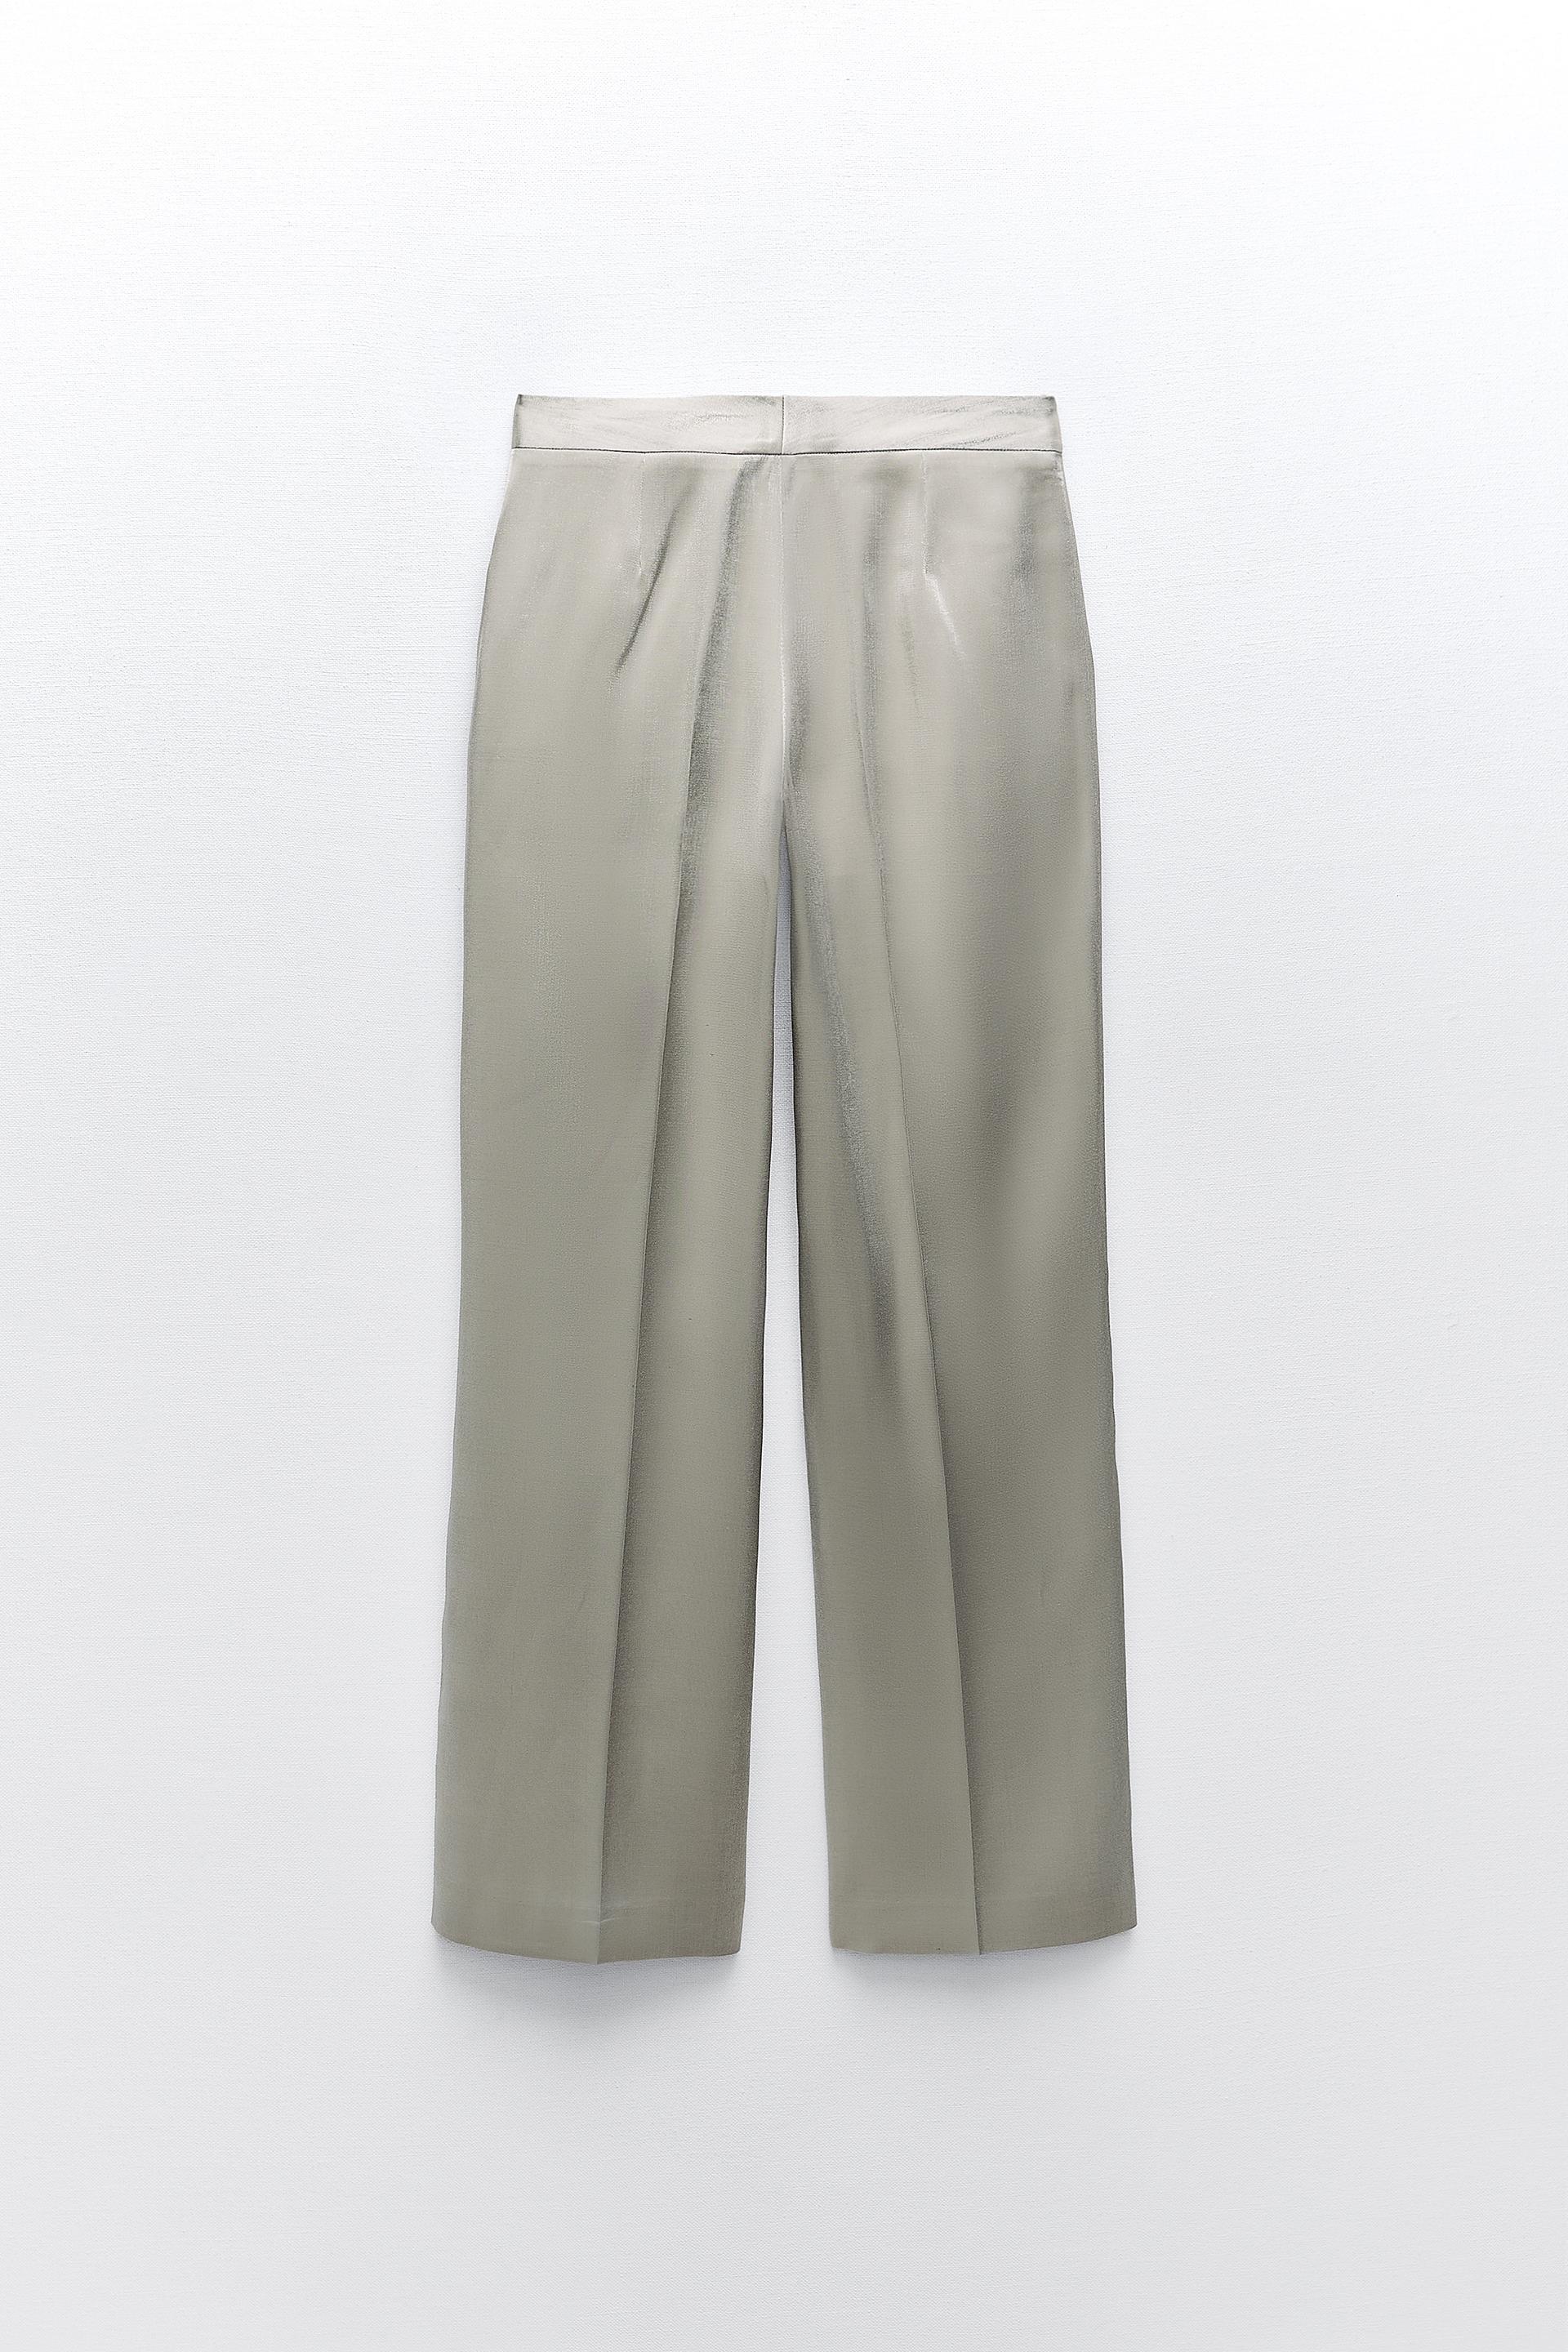 Este es el pantalón metalizado de Zara que triunfa entre las